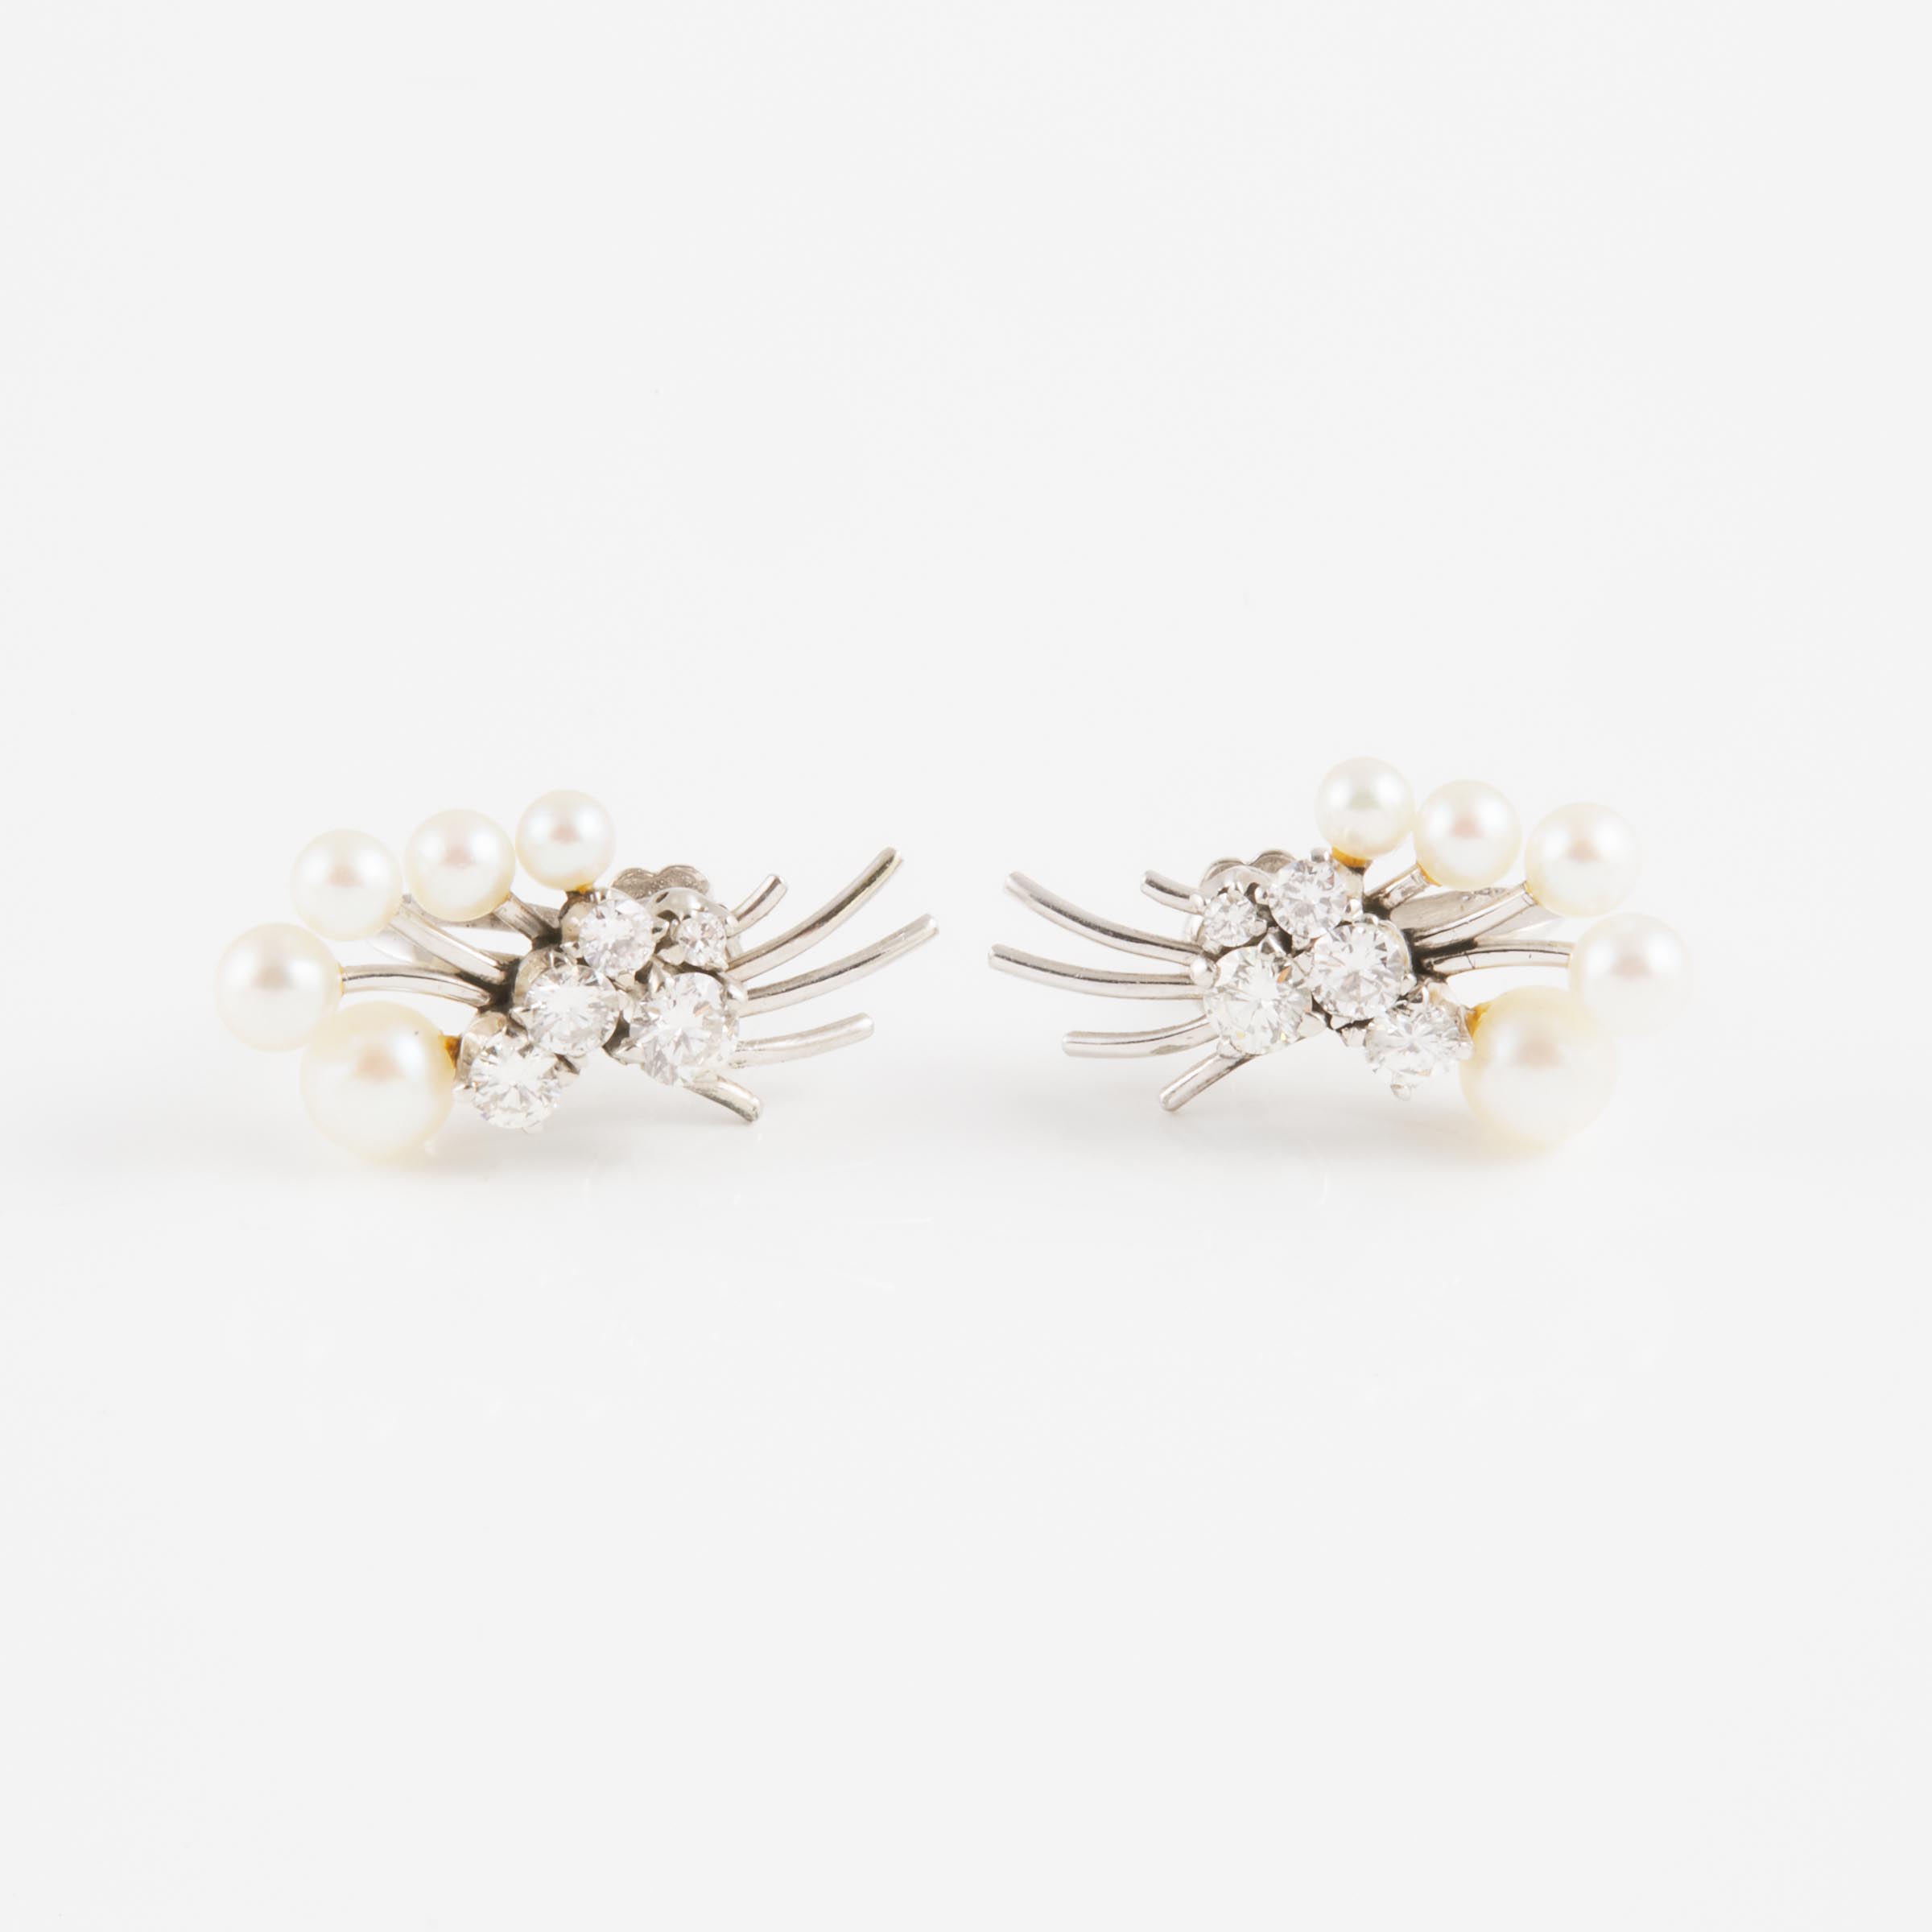 Pair Of 18k White Gold Screw-Back Earrings